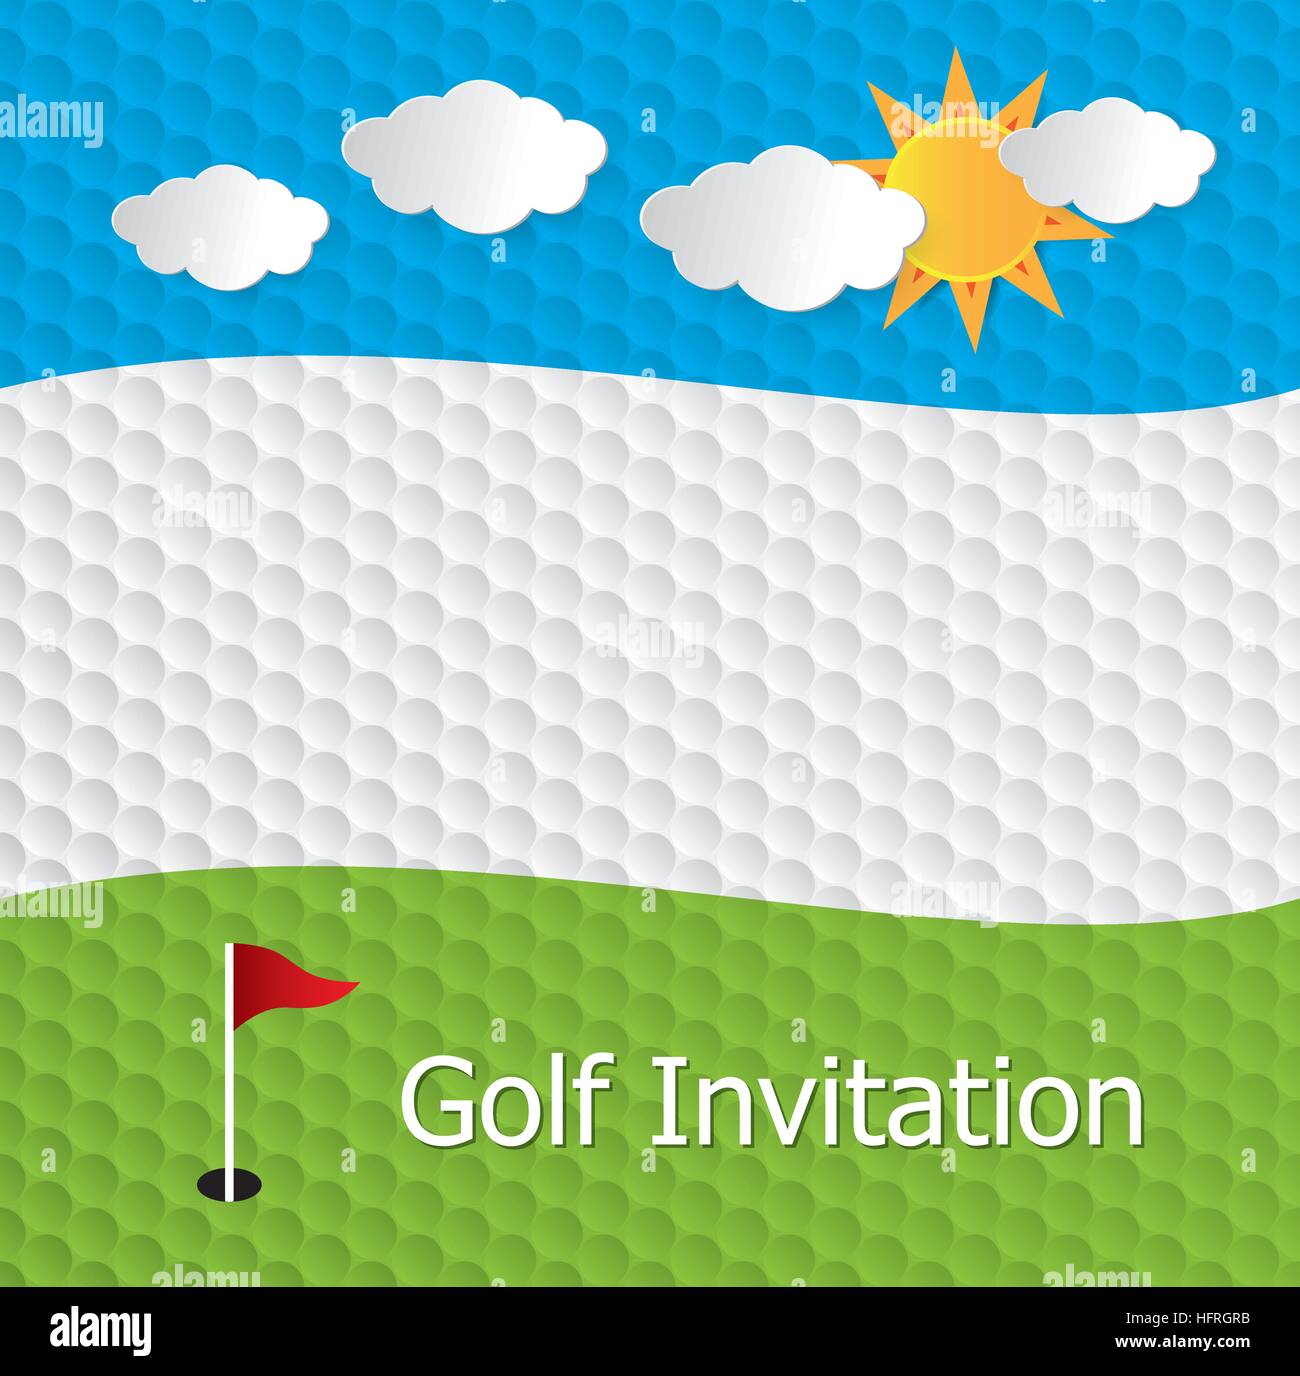 Golf Turnier Einladung Grafik-Design. Das Design, Golf-Ball-Textur-Muster, Golfplatz, Loch, Flagge, blauer Himmel, Wolke und Sonne darstellt. Stock Vektor